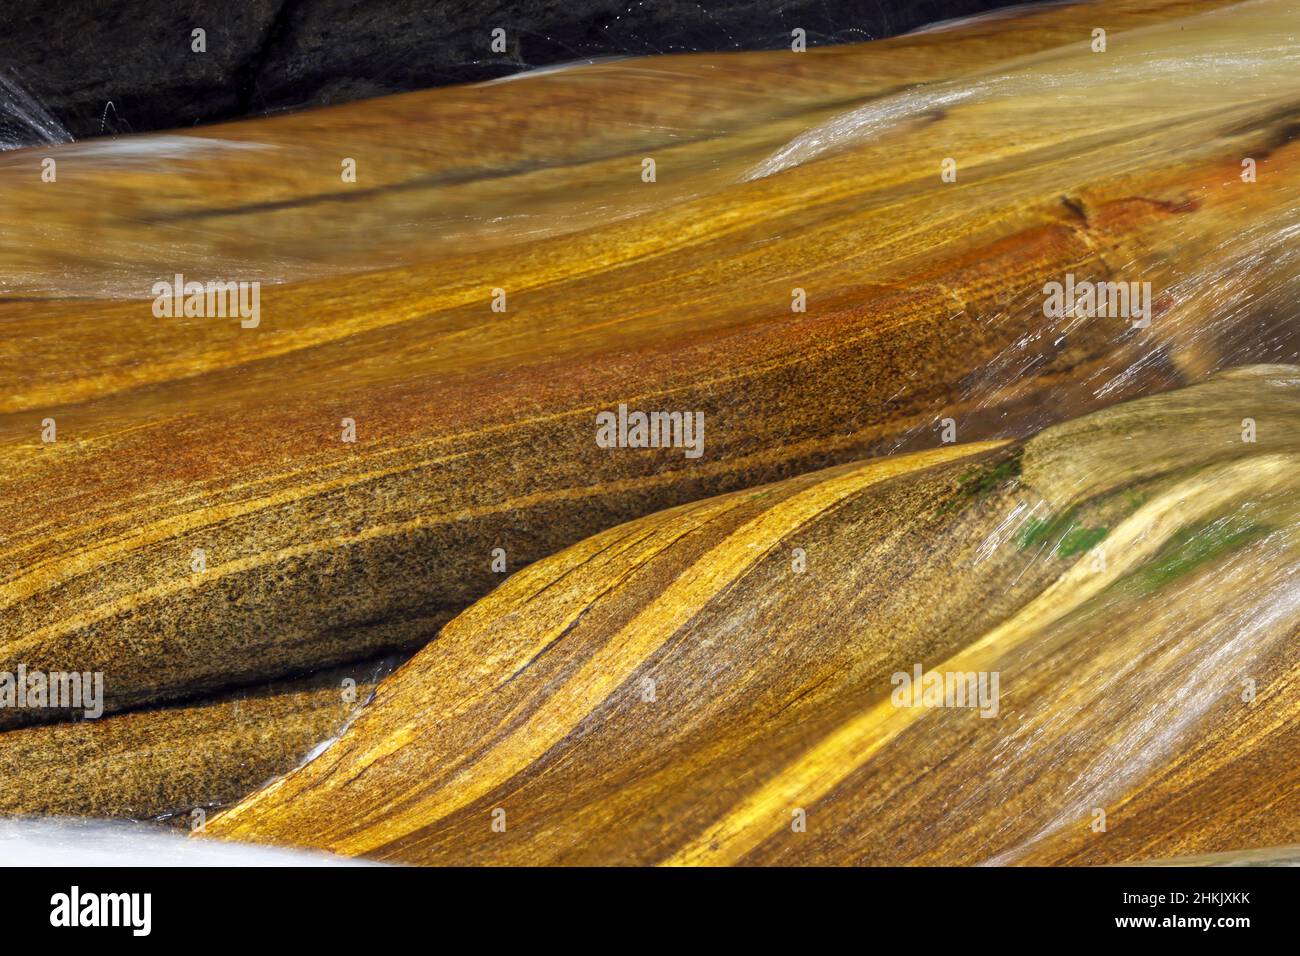 Roches polies en douceur dans la rivière Verzasca, formes et couleurs sur les rochers débordant, Suisse, Tessin, Lastezzo Banque D'Images